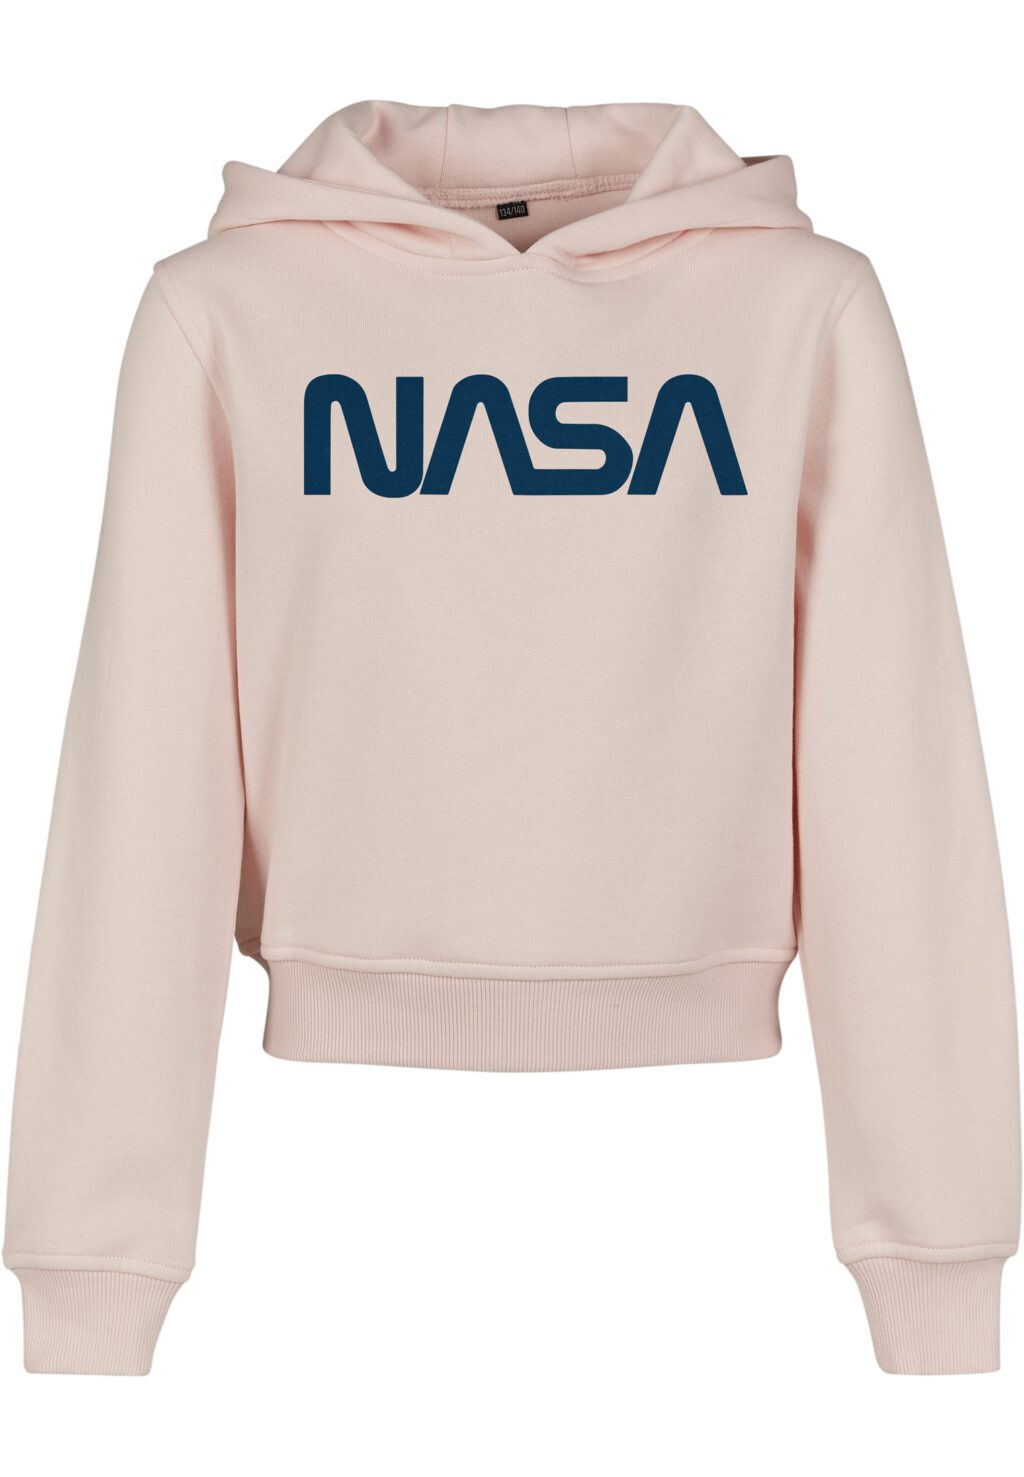 Kids NASA Cropped Hoody pink MTK033